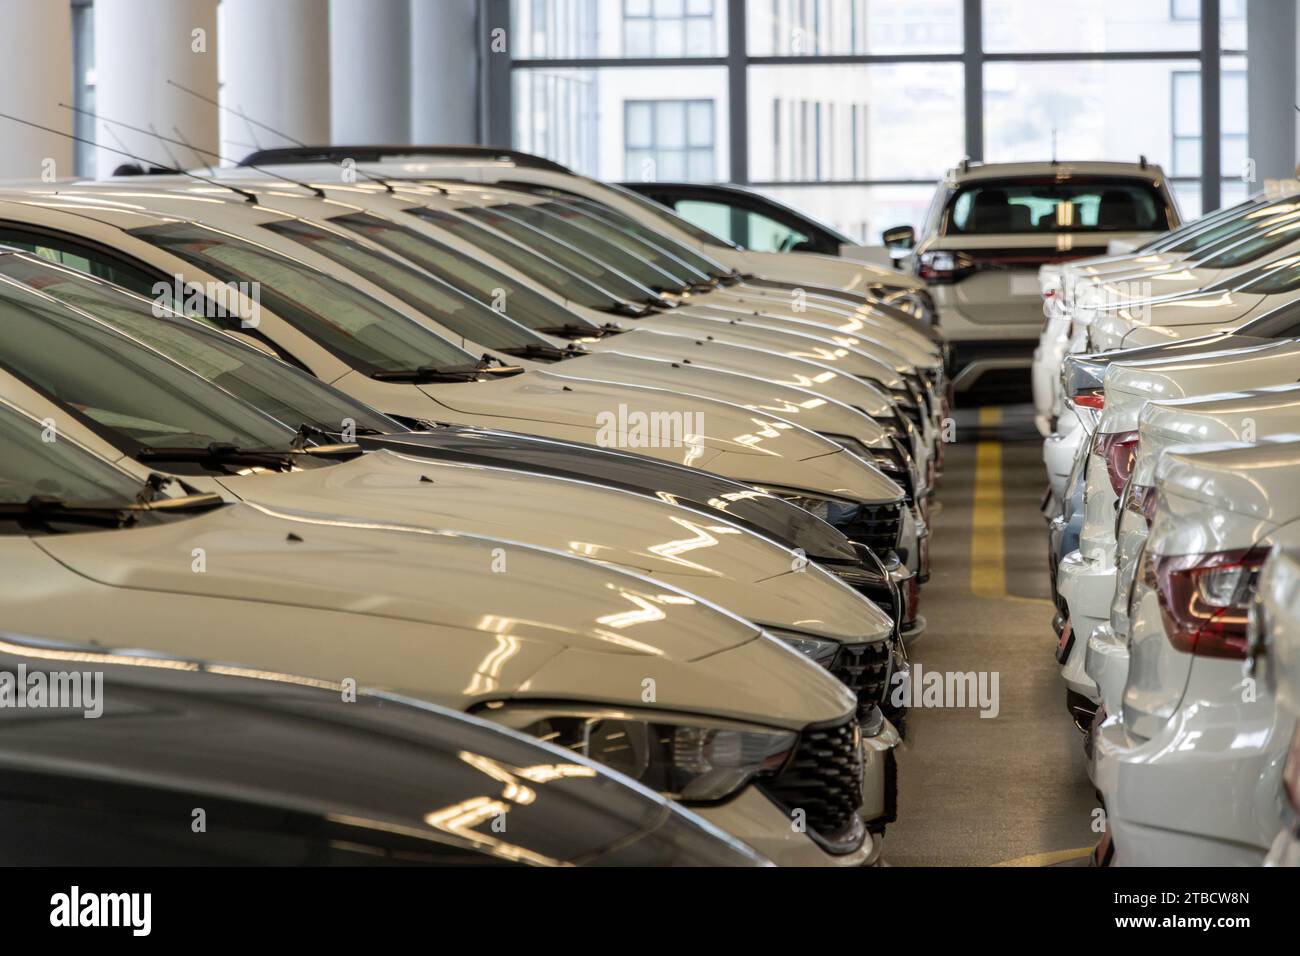 Vendita di auto usate vetture in fila inventario concessionario auto garage coperto Foto Stock